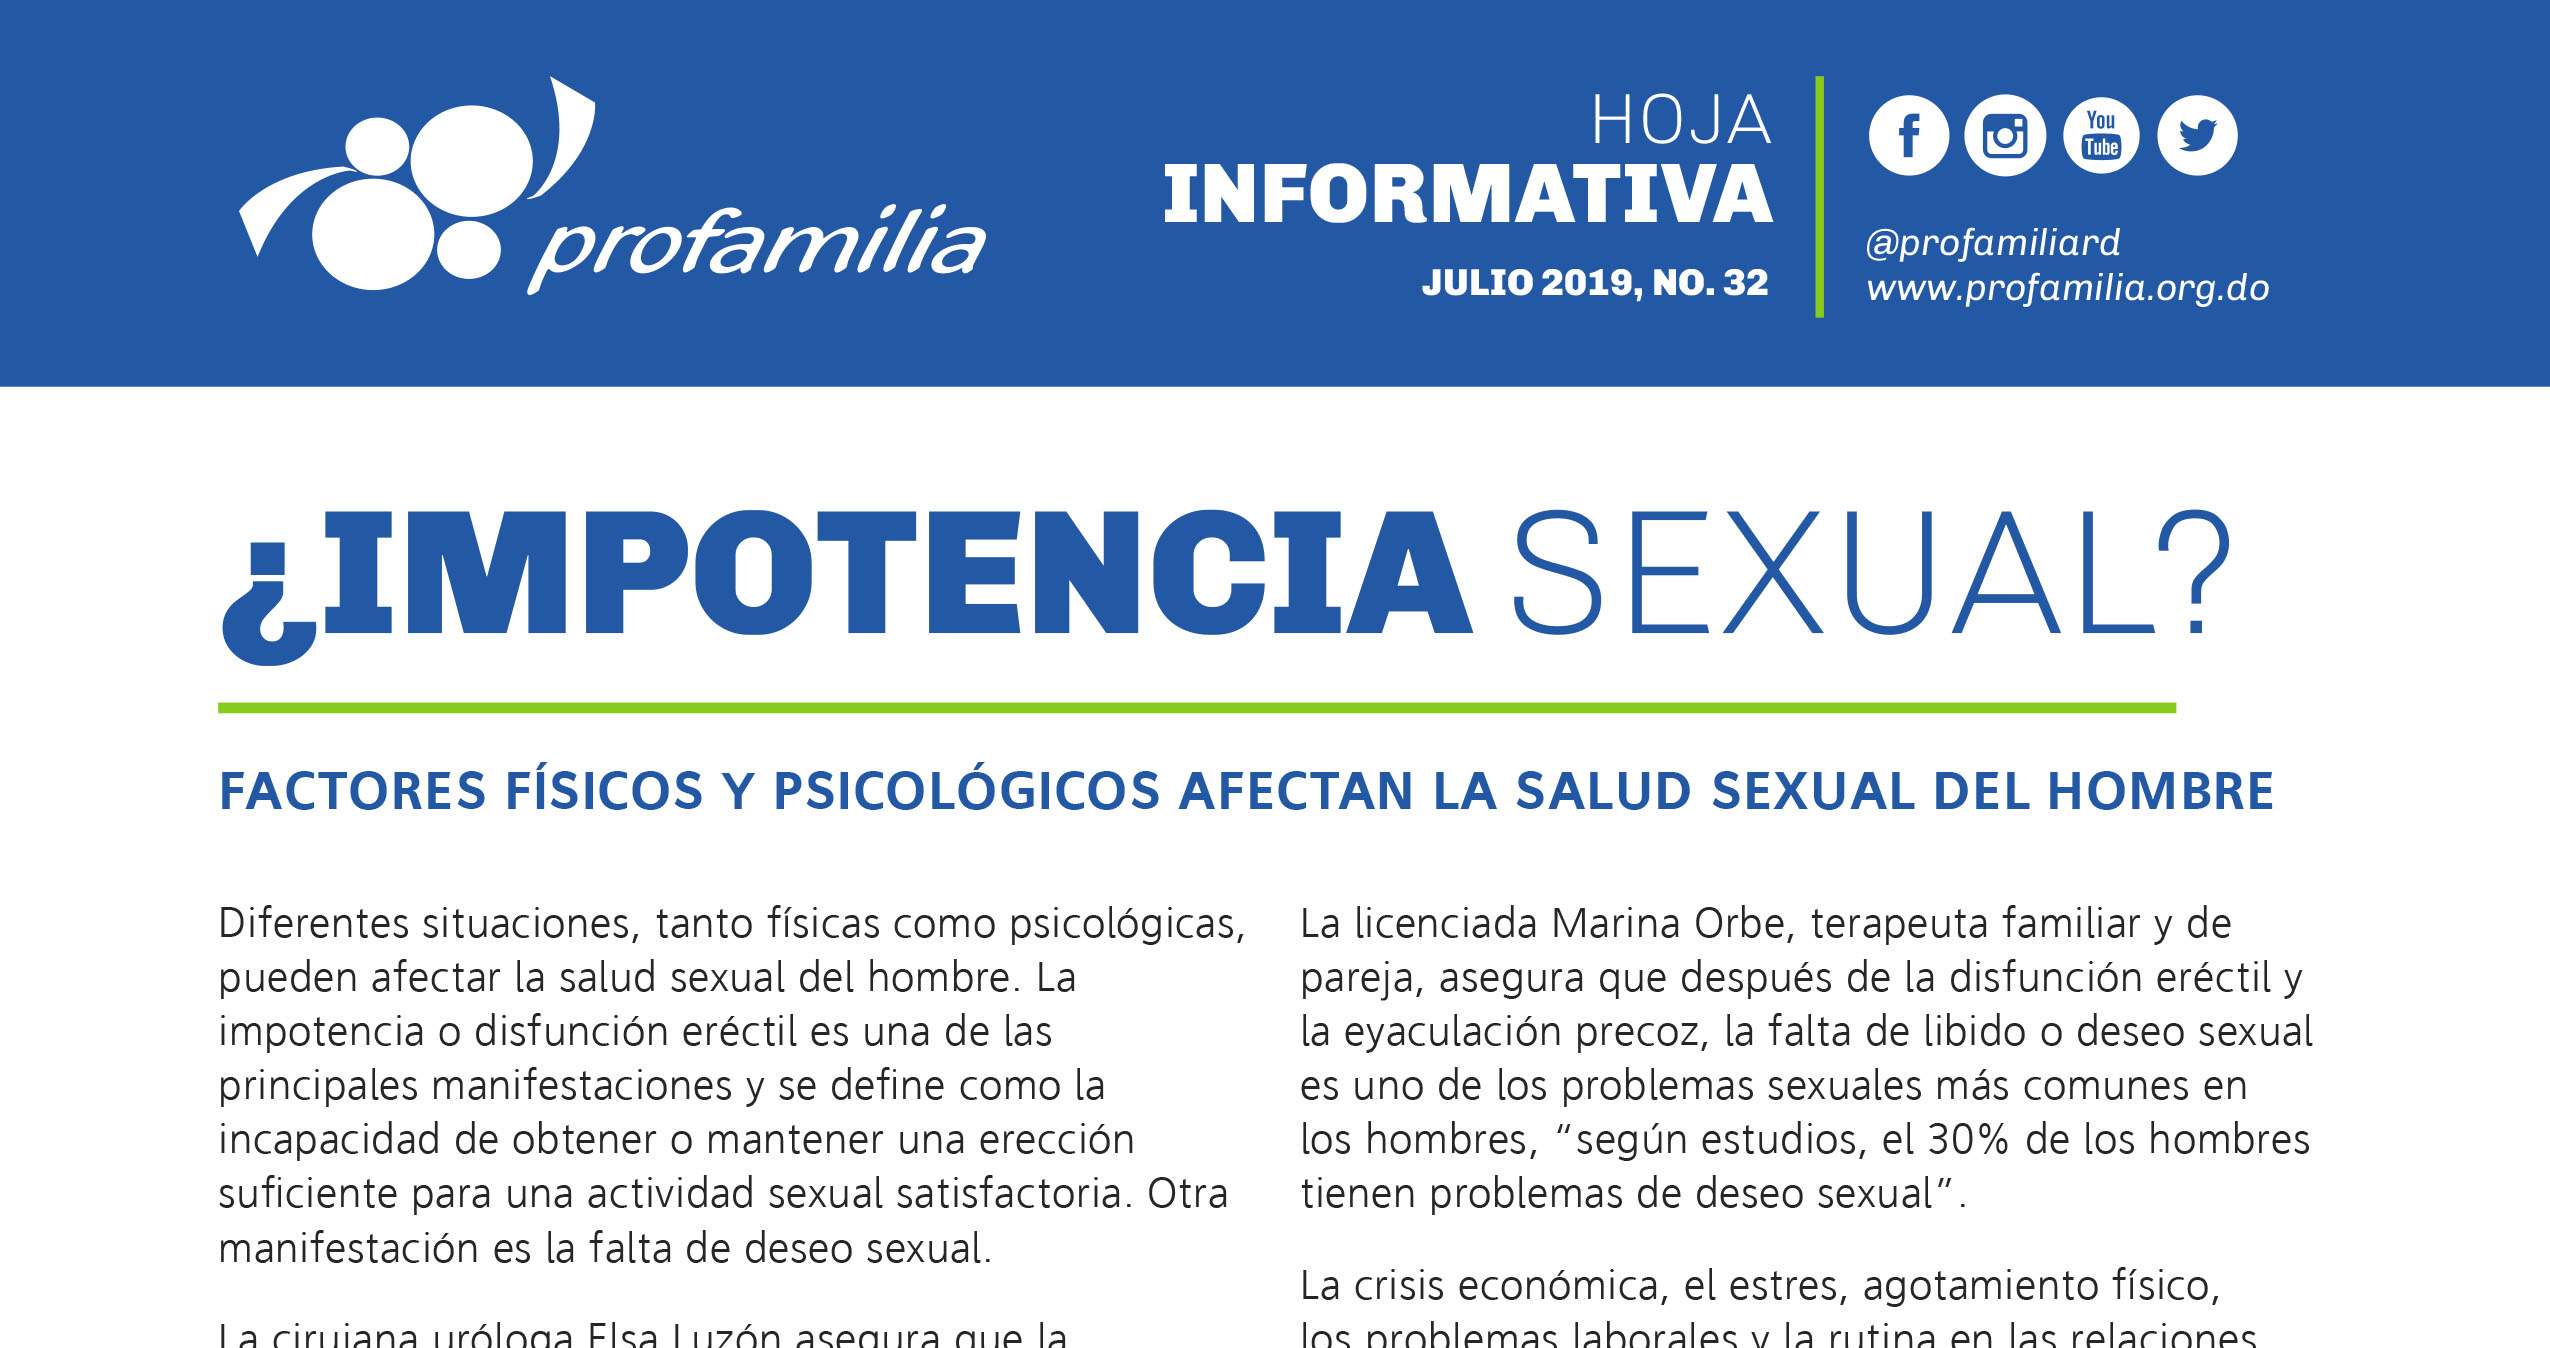 ¿IMPOTENCIA SEXUAL? Factores físicos y psicológicos afectan la salud sexual del hombre